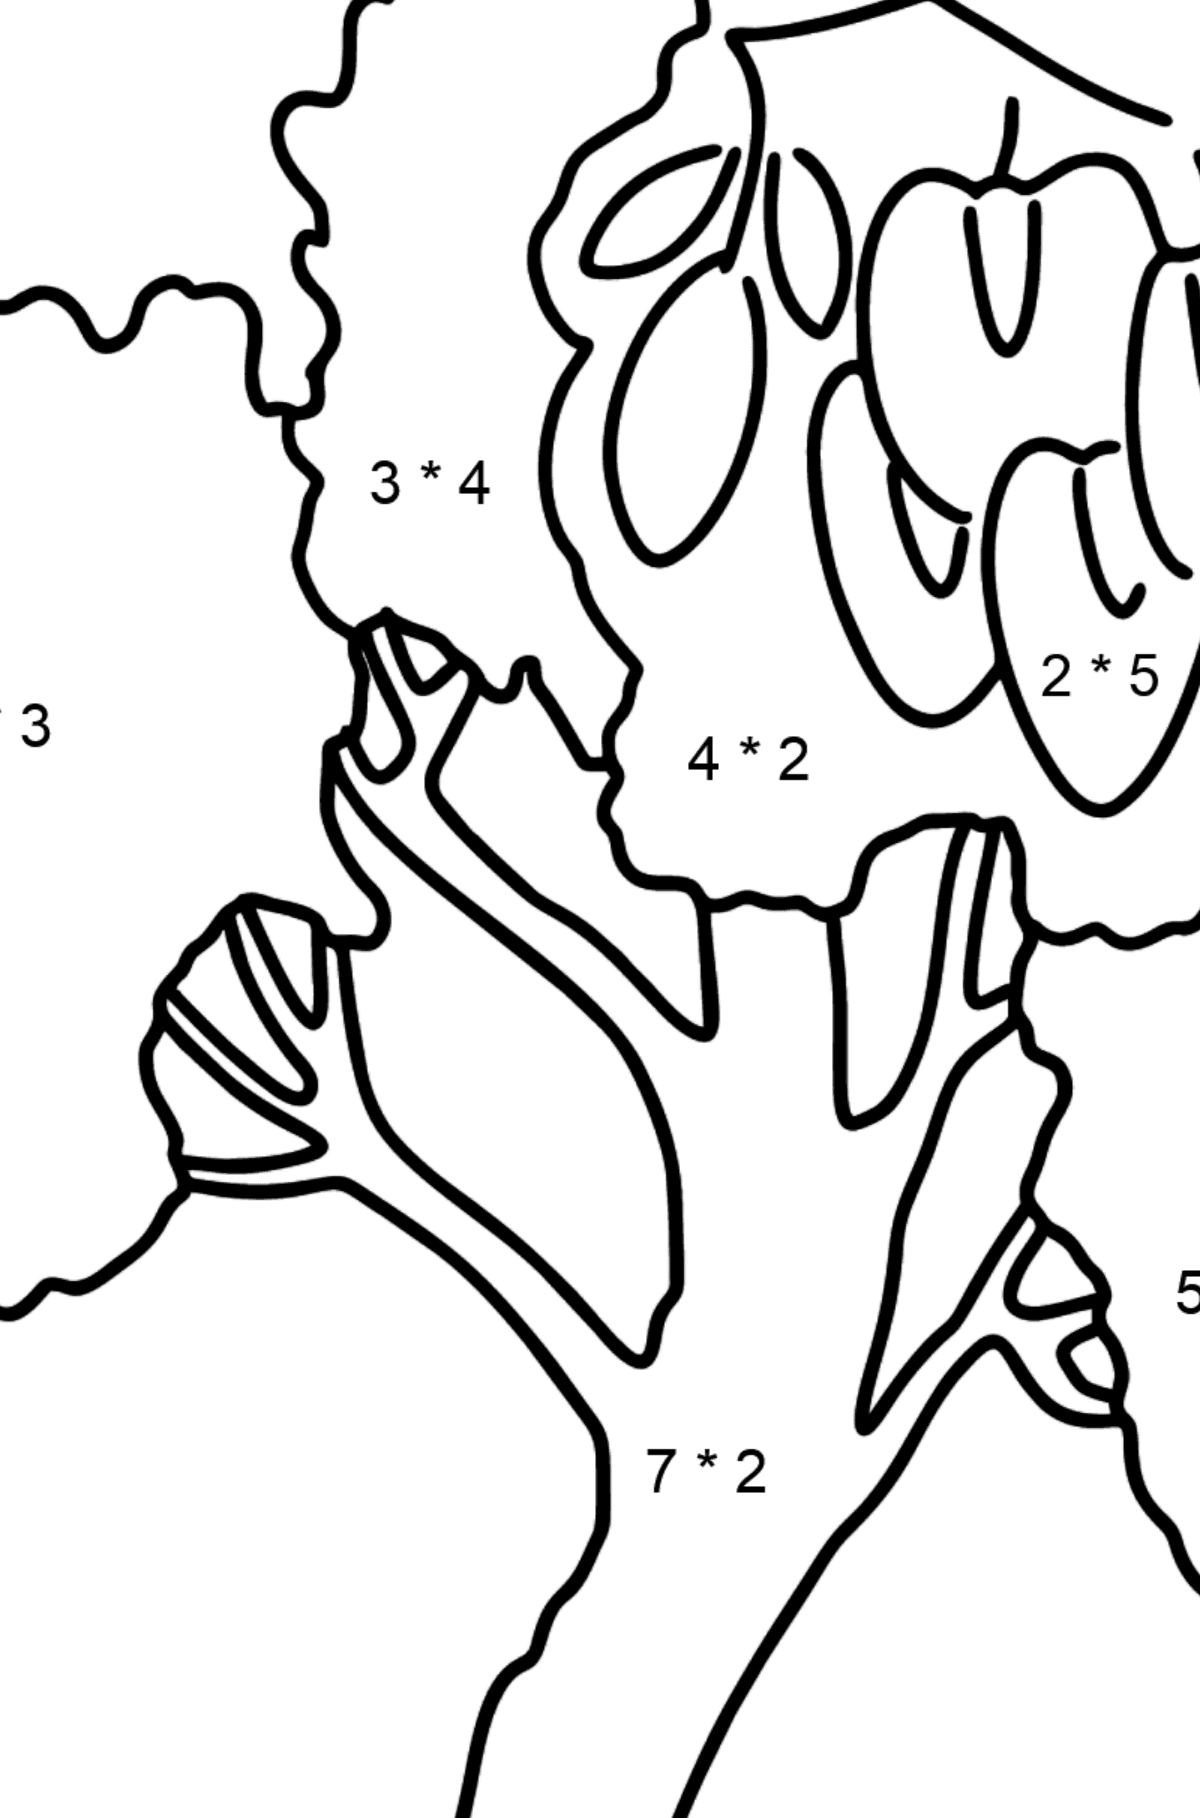 Desenho para colorir de Acacia (Robinia Pseudoacacia) - Colorindo com Matemática - Multiplicação para Crianças